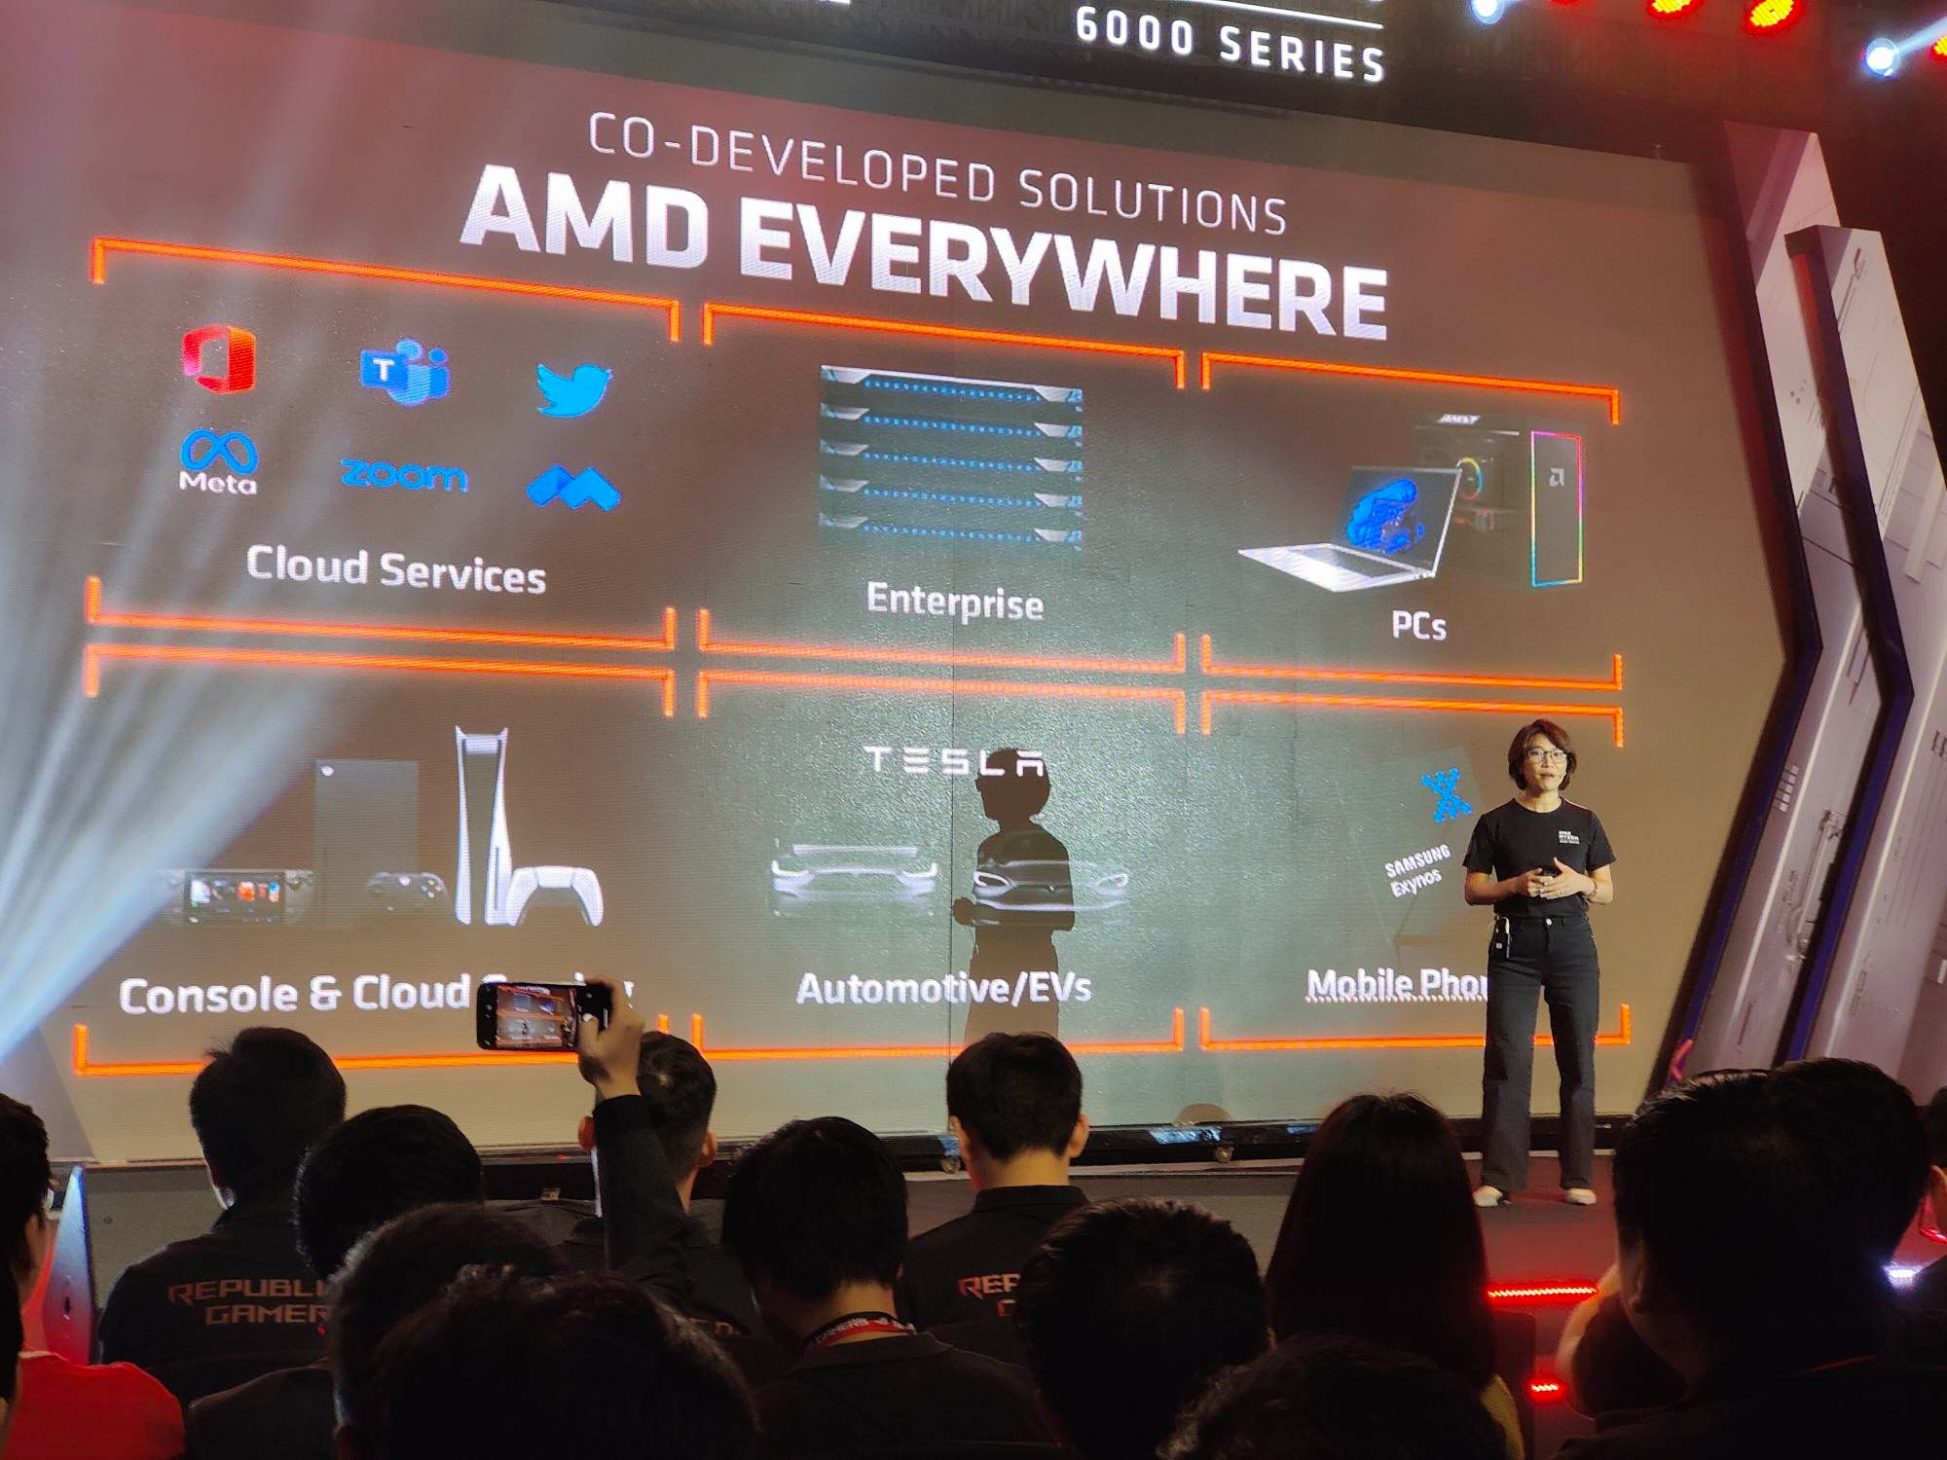 ASUS ROG tung loạt laptop ROG và TUF cấu hình khủng, sử dụng AMD Ryzen 6000 Series cho game thủ, giới sáng tạo - 283853011 1125294358046748 4670582057836806406 n 1